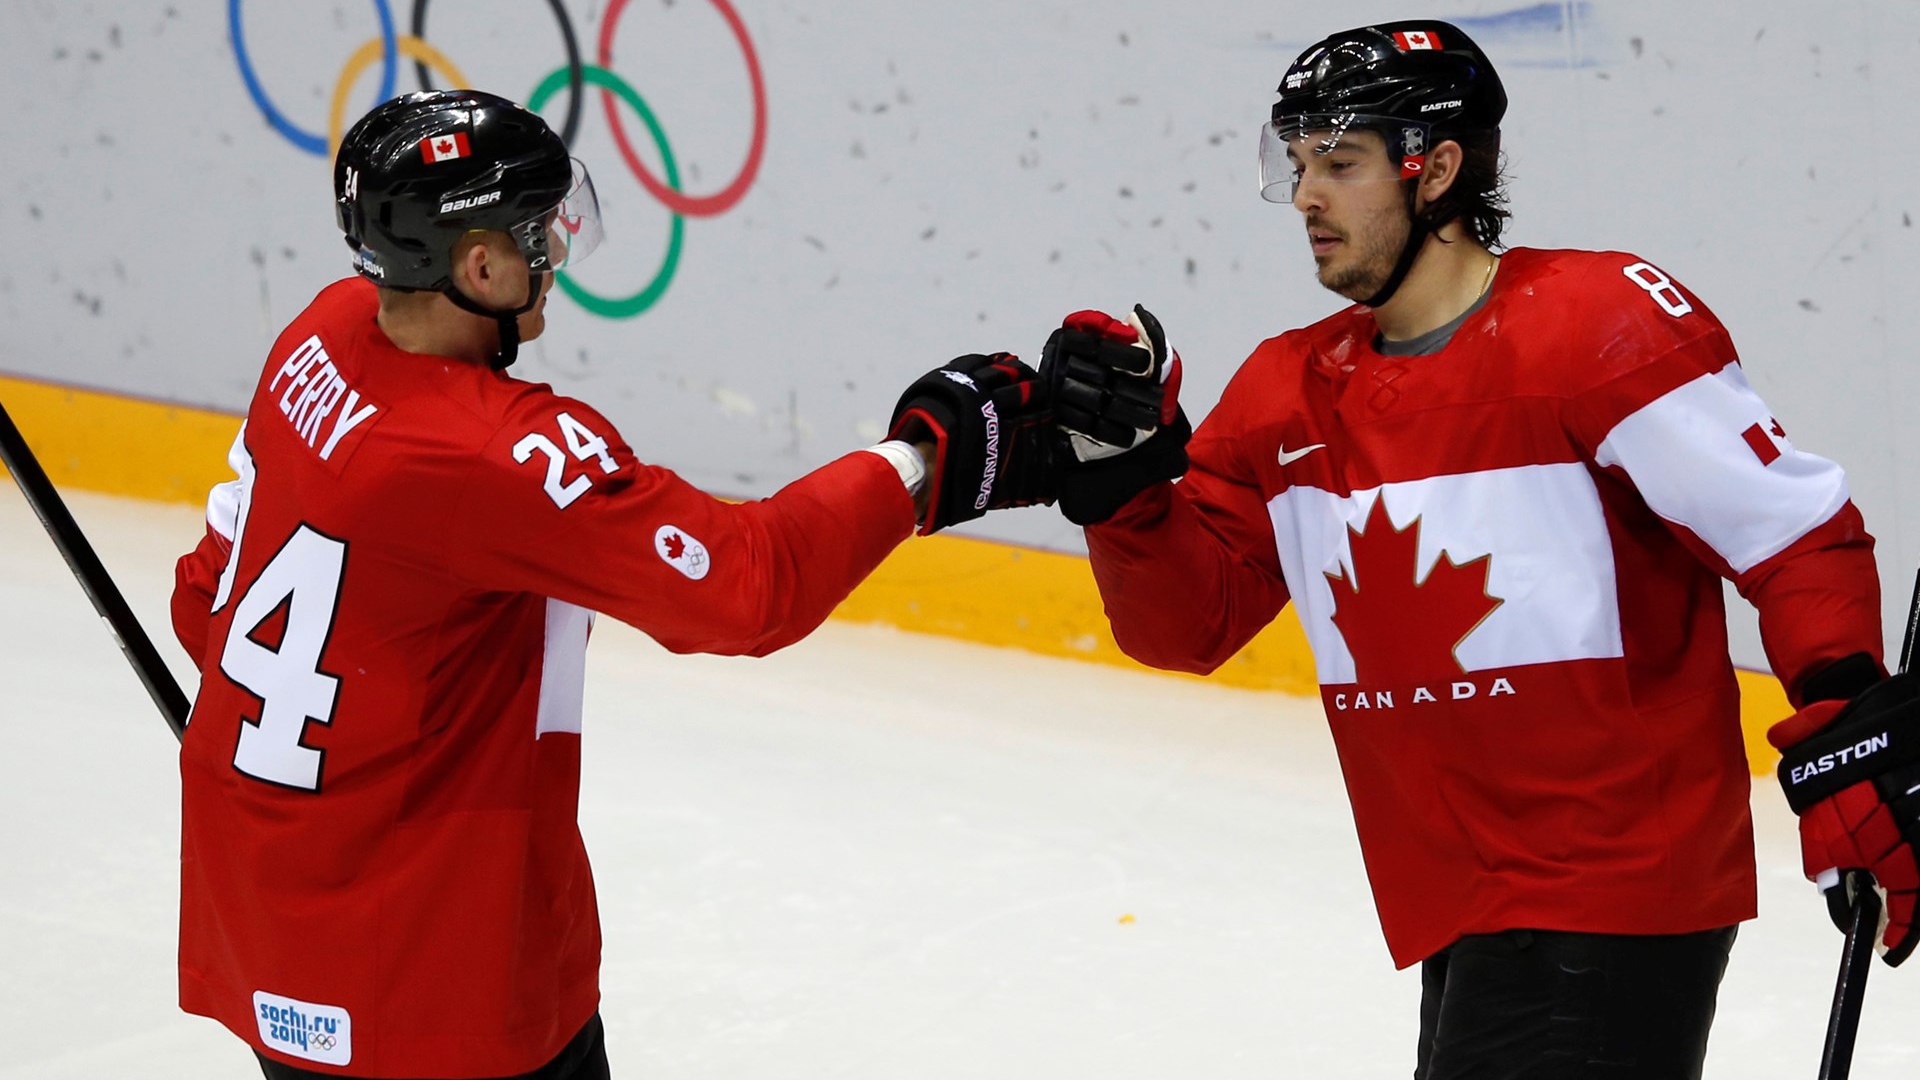 Сборная Канады по хоккею на олимпиаде в Сочи золотая медаль